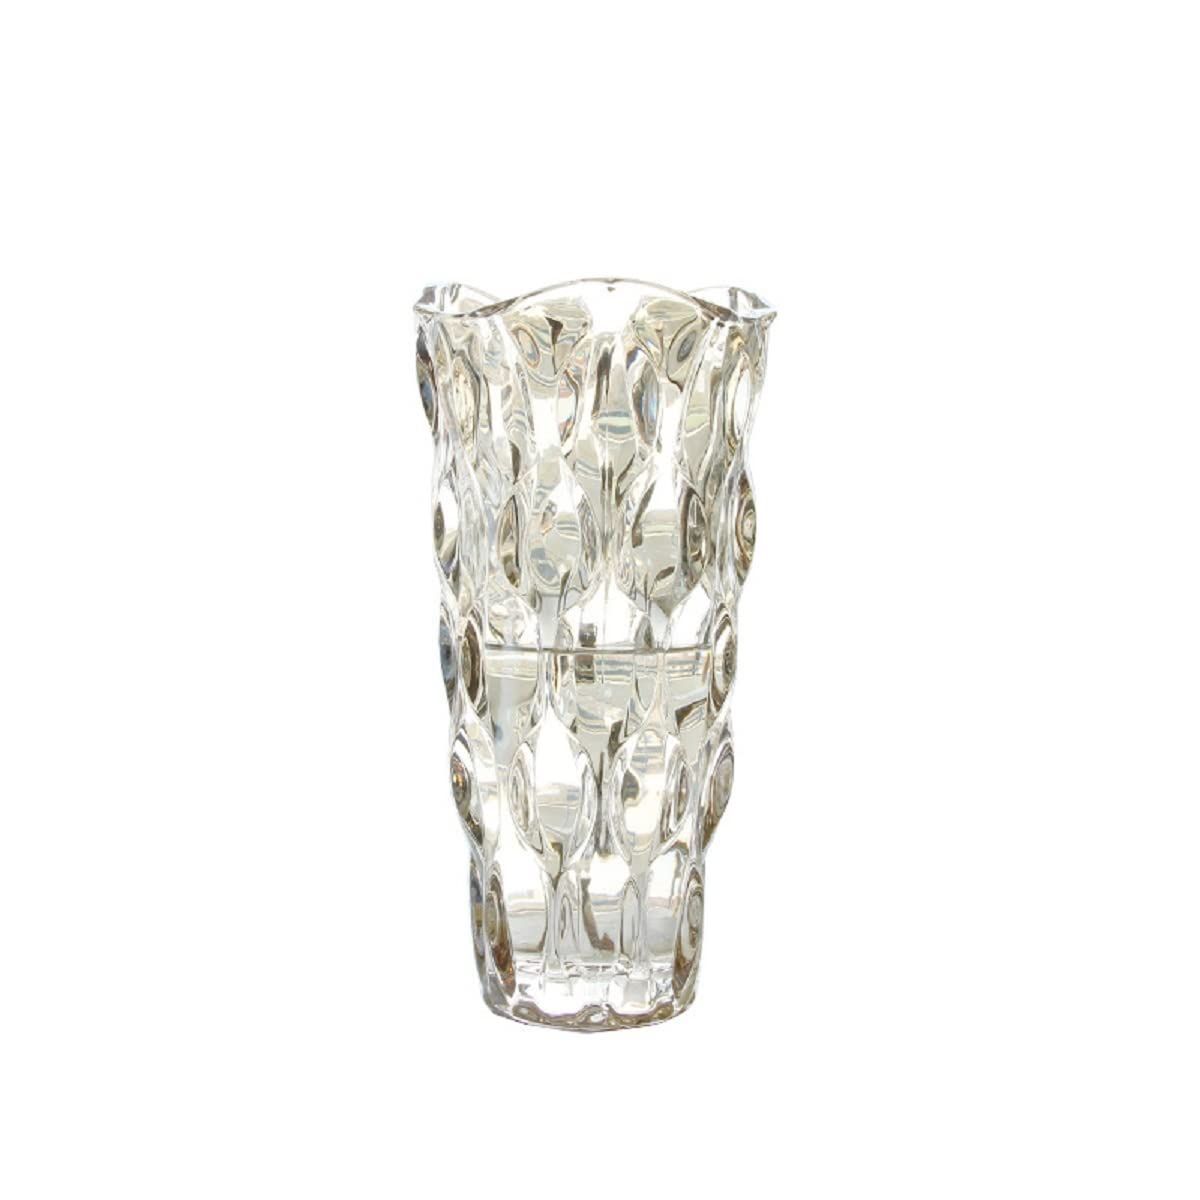 新品 ガラス フラワーベース 透明 花瓶 ガラス おしゃれ 大 花瓶 北欧 花瓶 30cm グラデーション 現代 シンプル 透明 広口 花器 部屋 玄関  リビング インテリア プレゼント (シャンペン色-24cm) - メルカリ